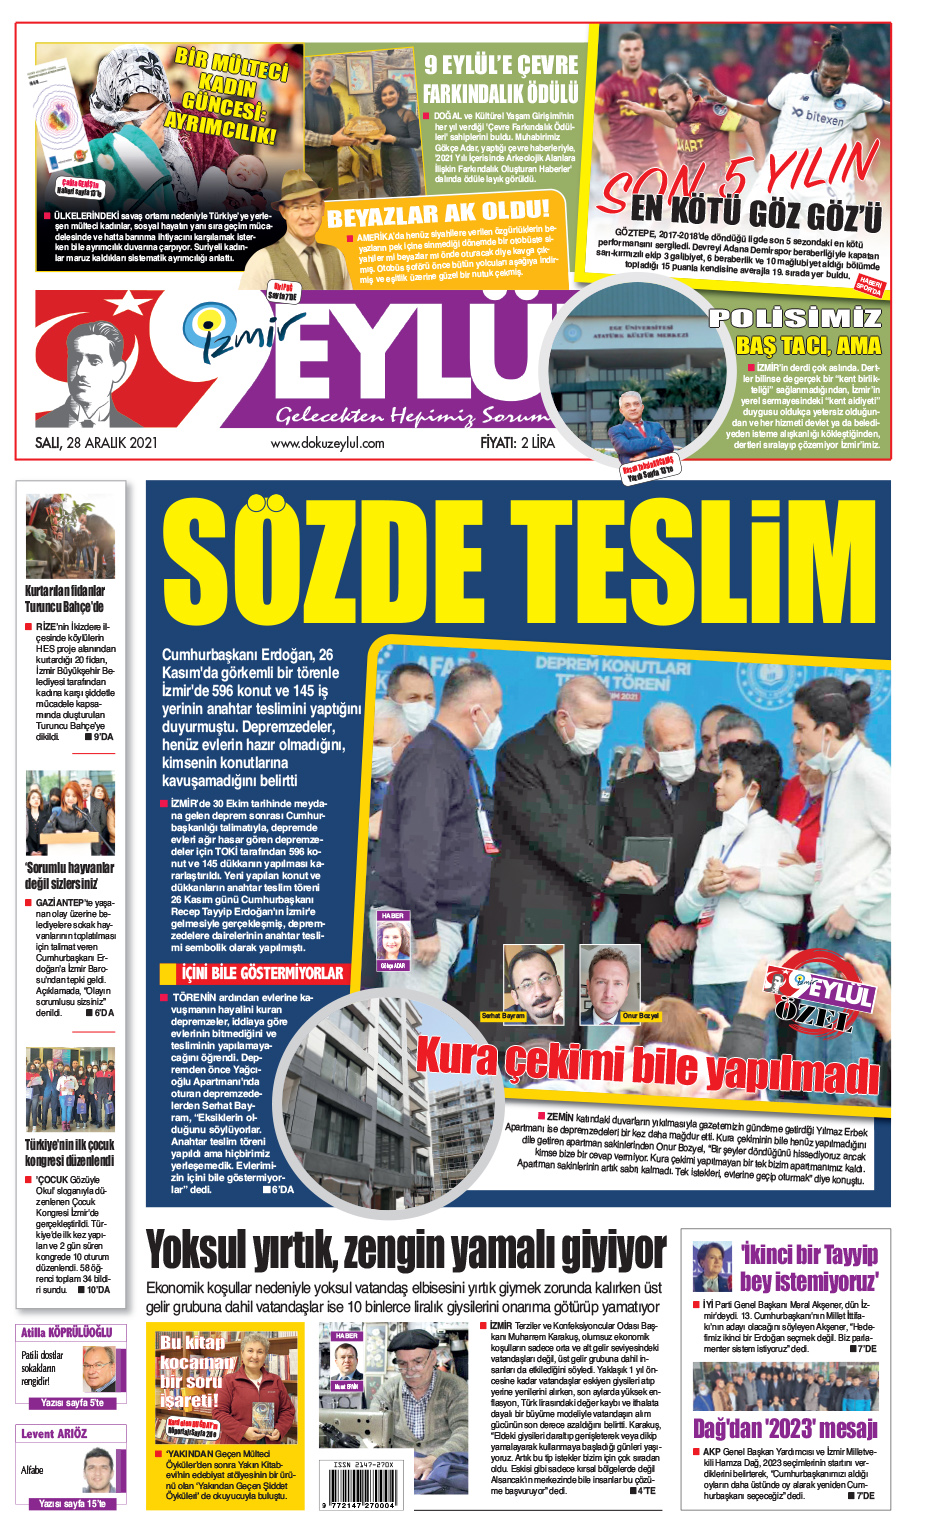 Dokuz Eylül Gazetesi | İzmir, Türkiye, Dünya'dan Güncel Haberler - 28.12.2021 Manşeti